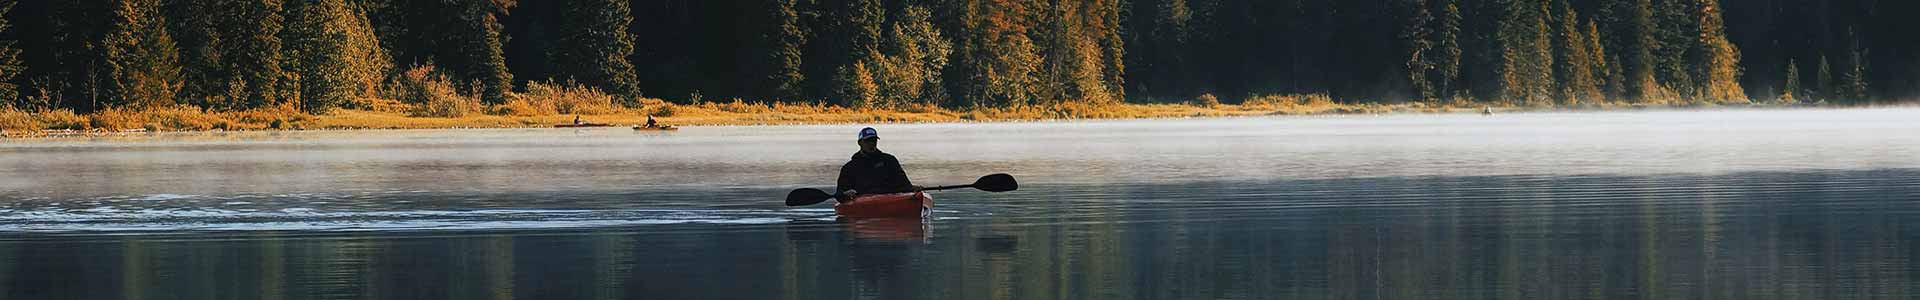 Canoa en un lago